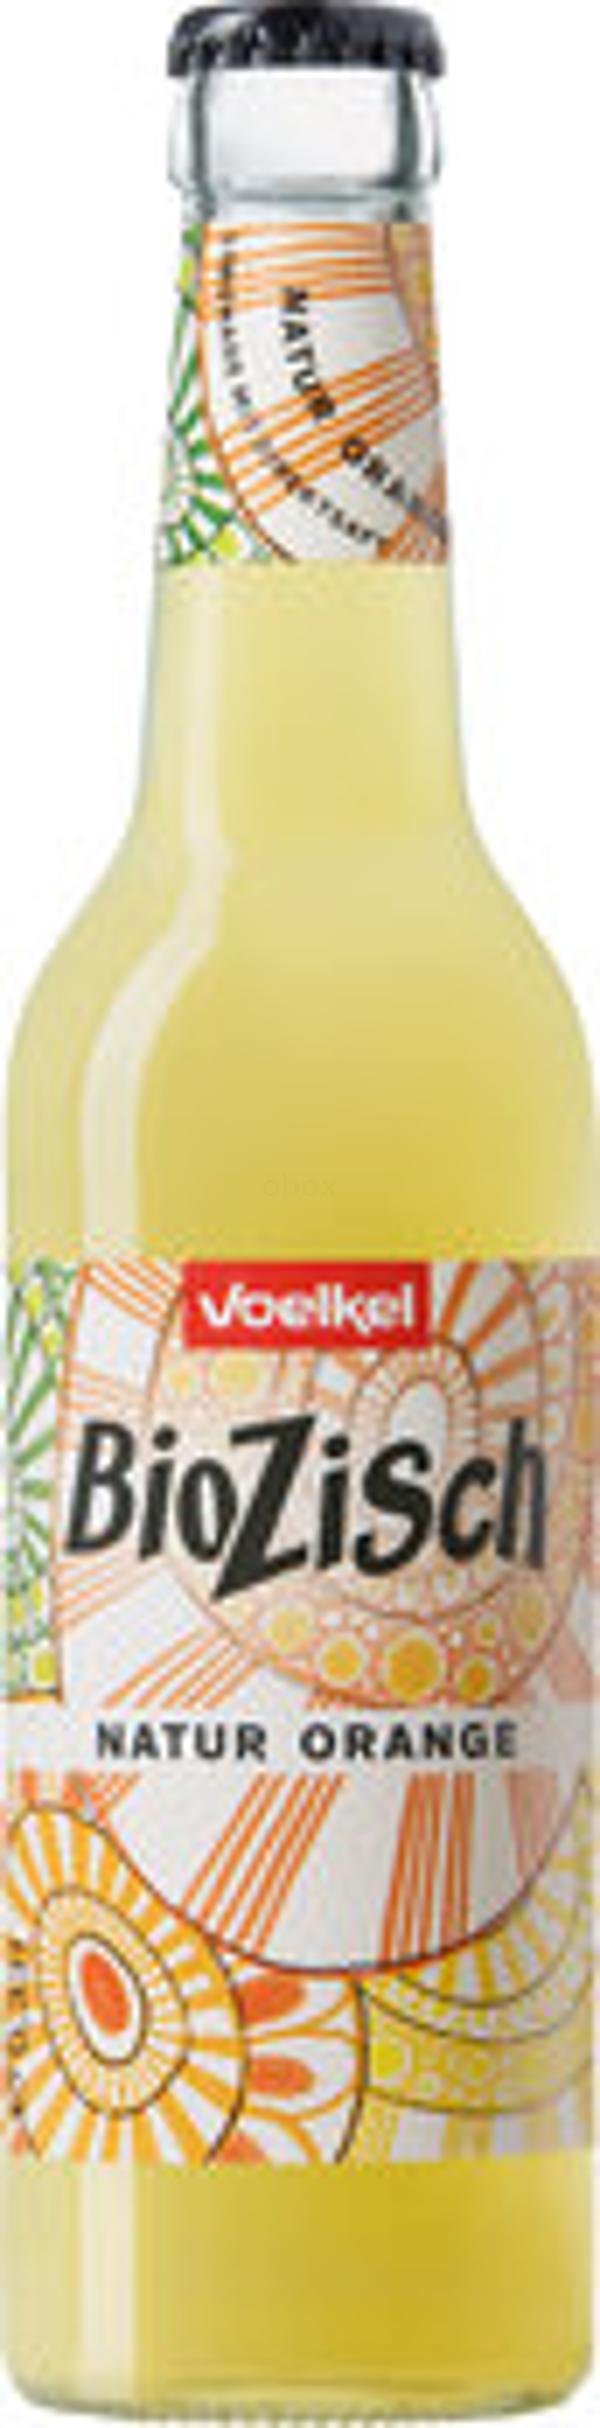 Produktfoto zu BioZisch Natur Orange, 0,33l